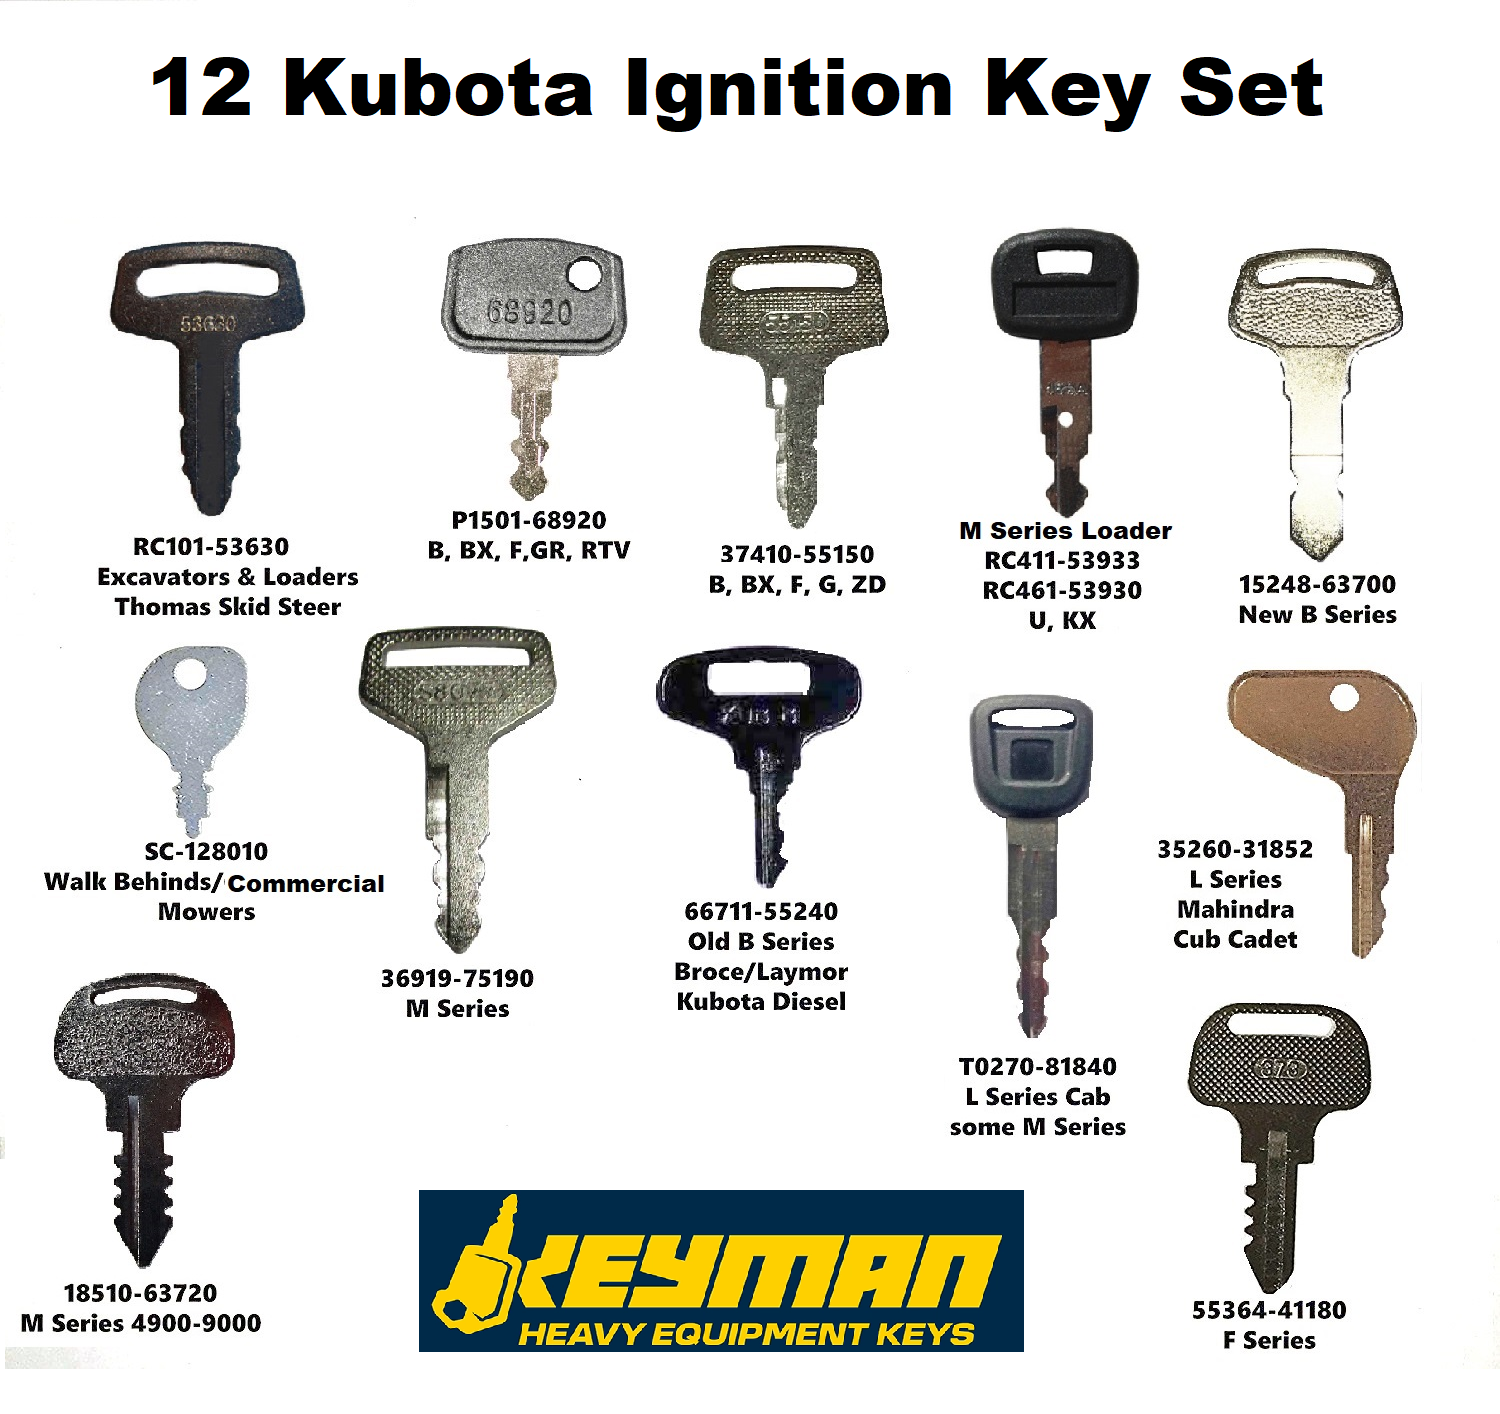 Set of 2 Ignition Keys Fits Kubota 15248-63700 6C040-55430 6C040-55432 